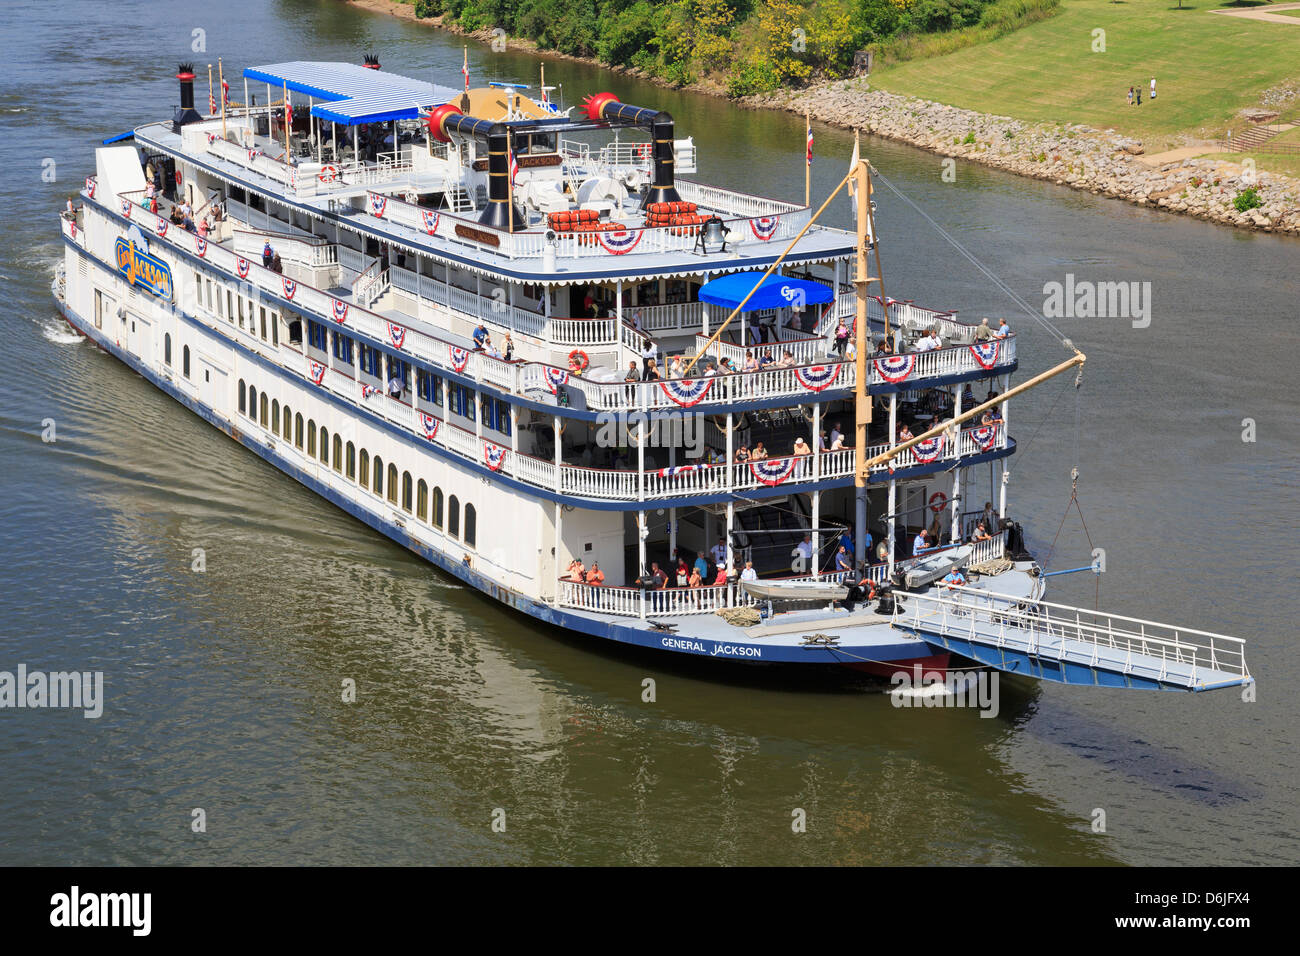 Le général Jackson Riverboat, Nashville, Tennessee, États-Unis d'Amérique, Amérique du Nord Banque D'Images